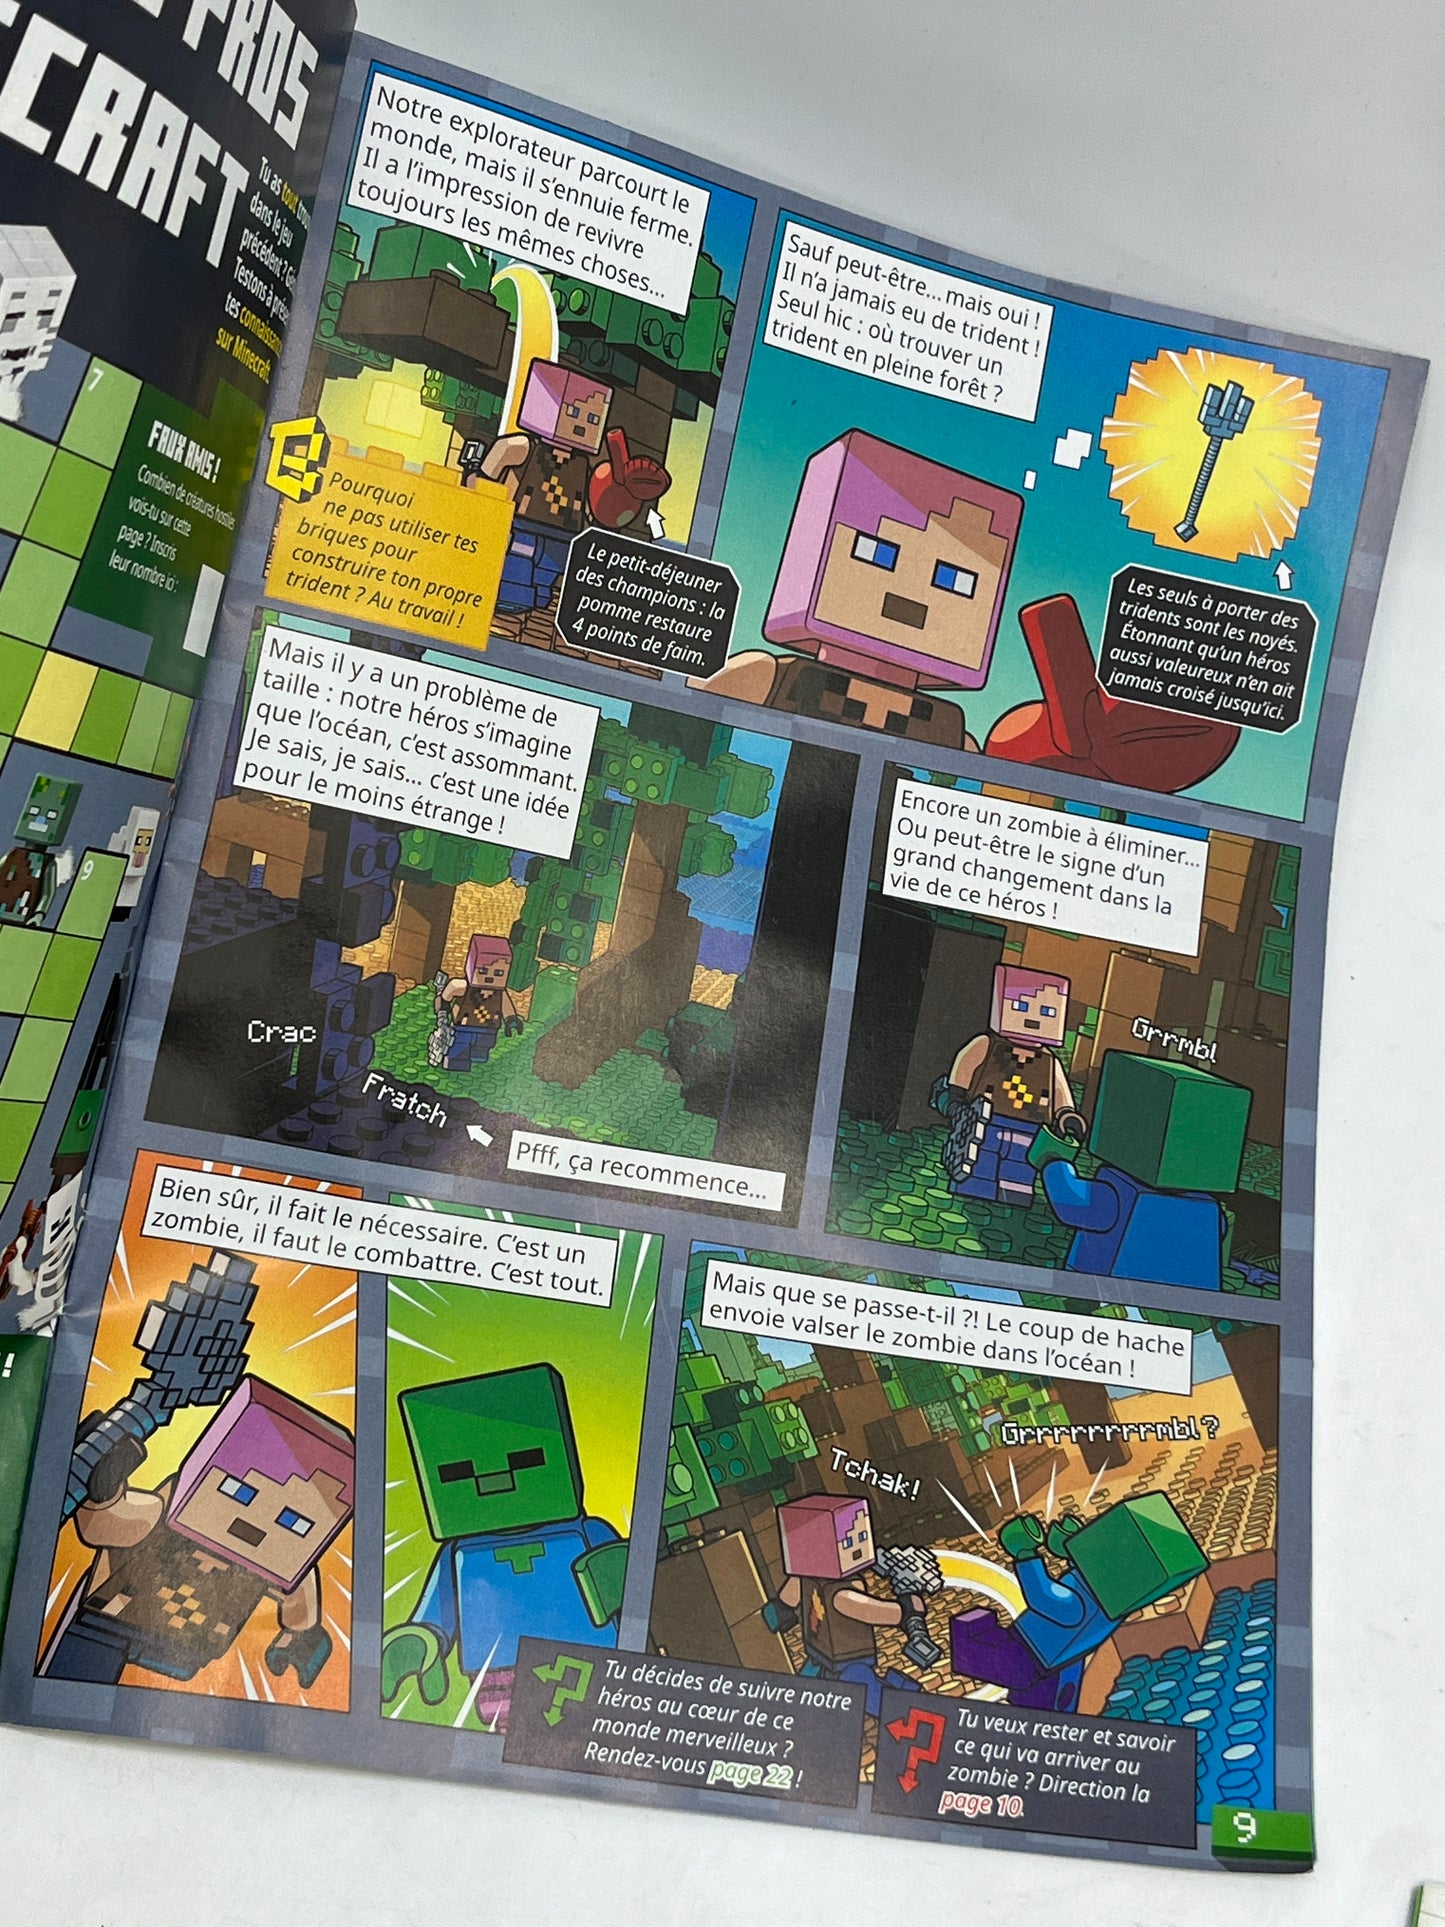 livre d’activité Magazine Lego Minecraft avec ces 2 figurines à monter Zombie et Ninja avec leur canon Neuf sous blister